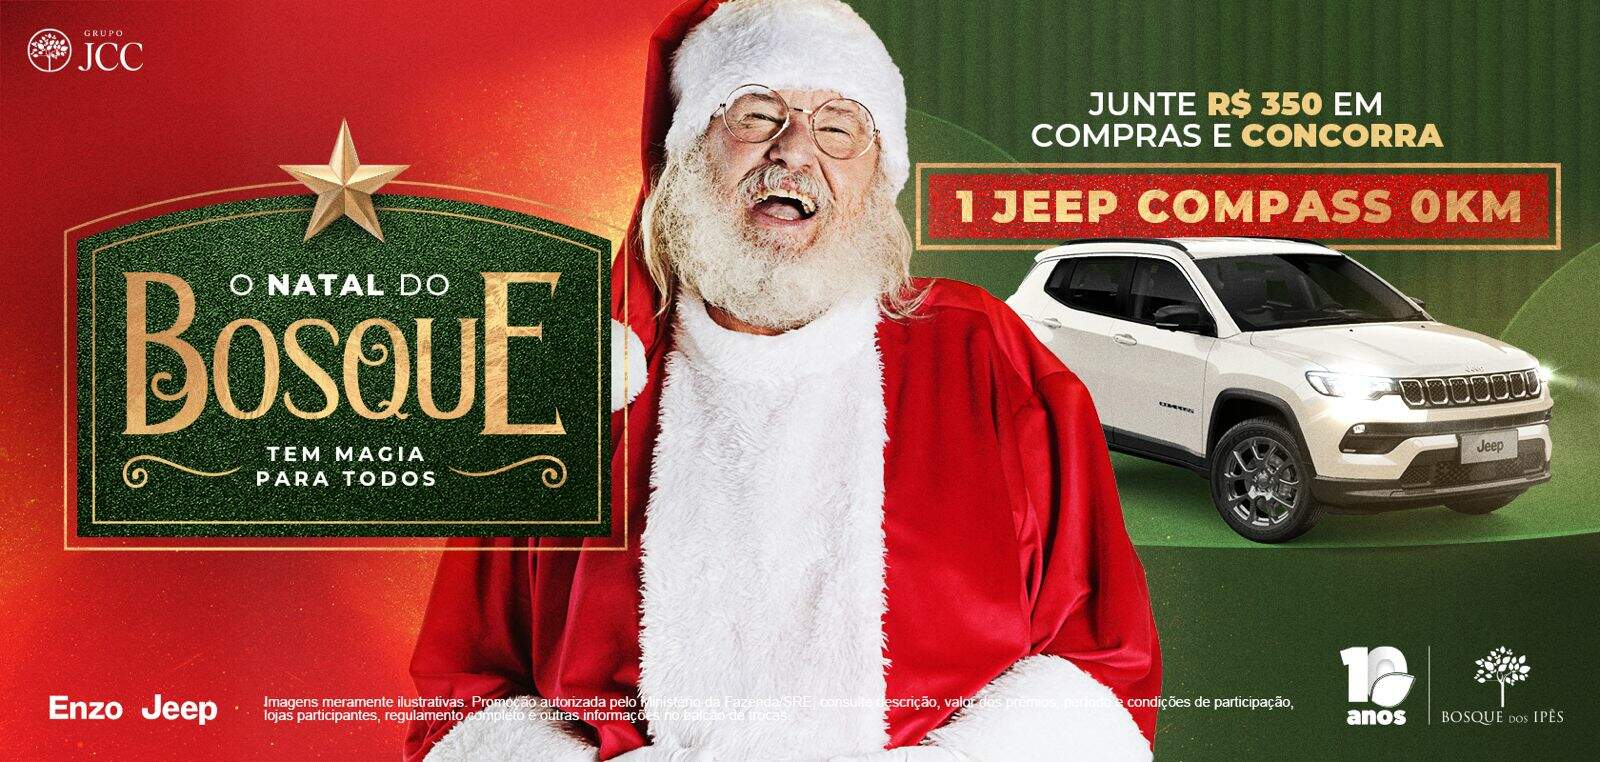 Bosque dos Ipês sorteia Jeep Compass na promoção de Natal